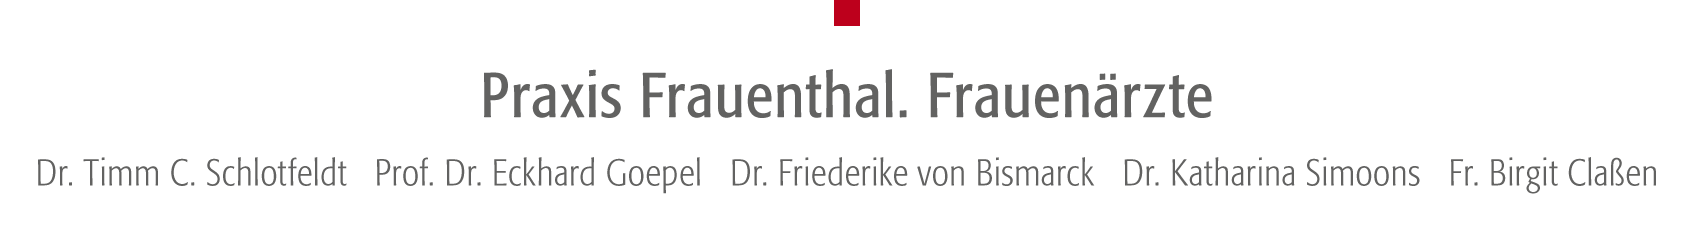 Ihr Ärzteteam Praxis Frauenthal - Dr. Timm C. Schlotfeldt, Prof. Dr. Eckhard Goepel, Priv. Doz. Dr. Kay Friedrichs, Dr. Friederike von Bismarck, Dr. Dorothee von Bülow